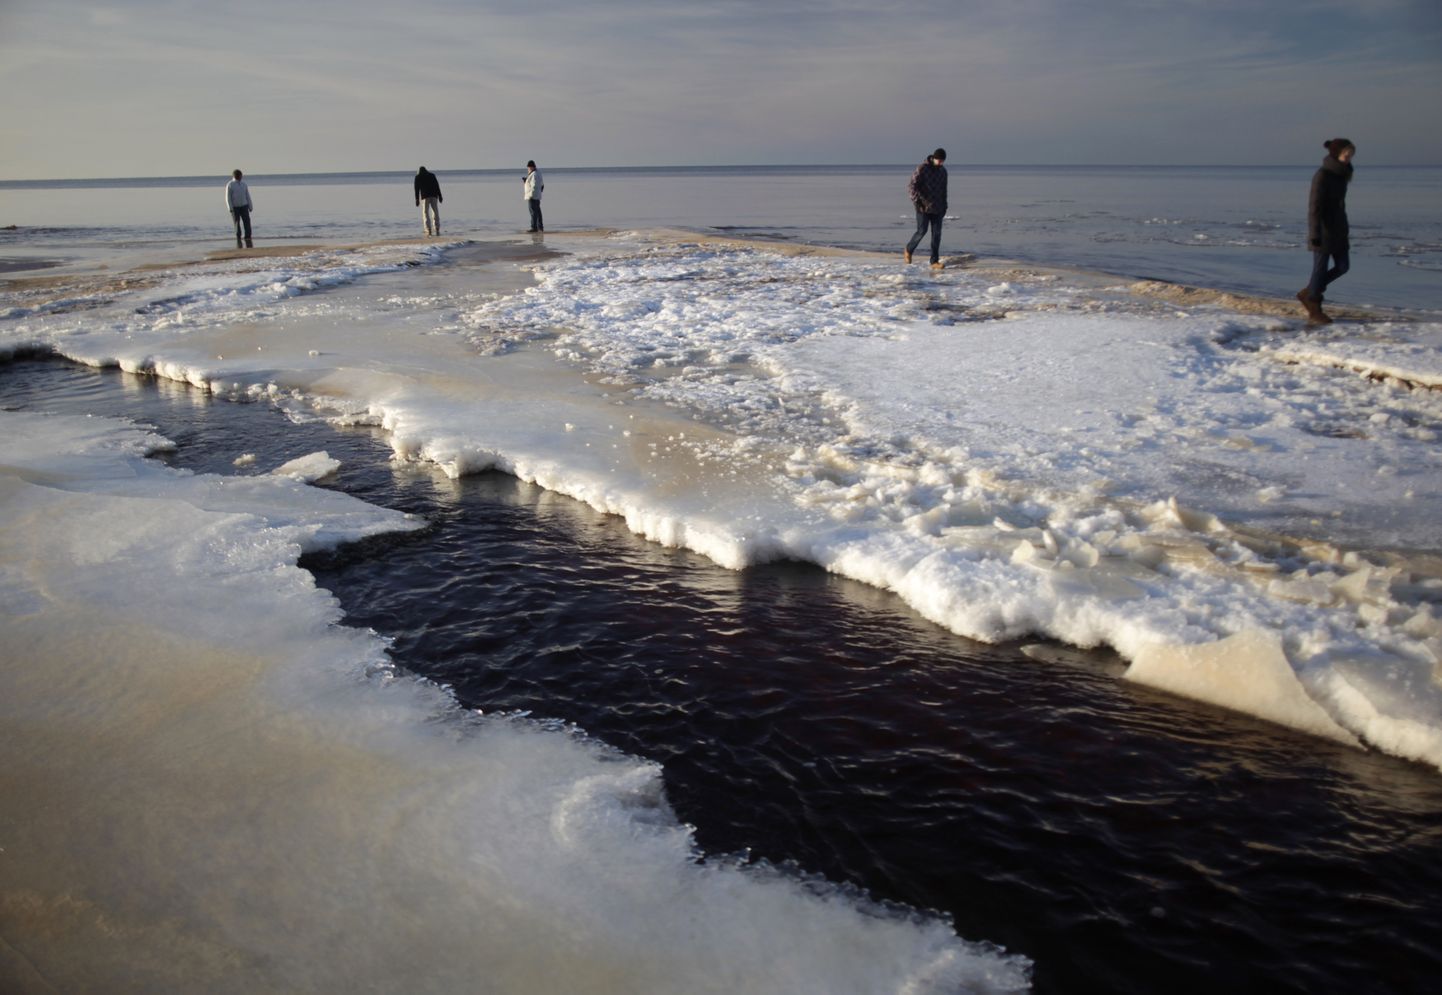 Pilt Saulkrasti rannikust 2012. aasta jaanuari lõpus, kui samuti tavatult soojalt alanud talv pööras aga äkitselt külmaks.